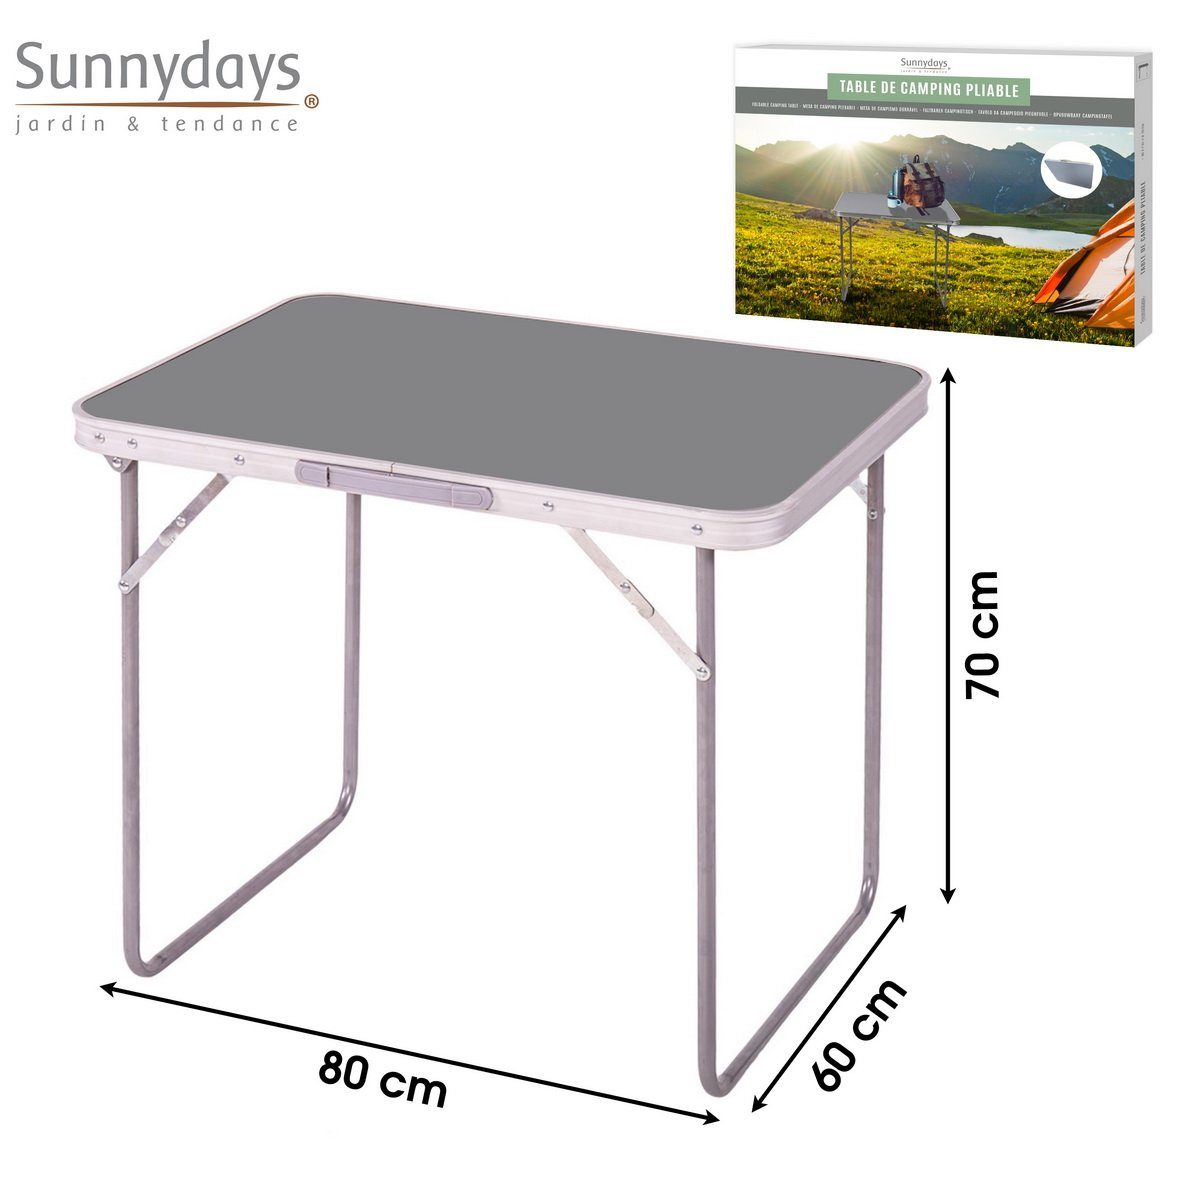 Partytisch Picknicktisch Sunnydays klappbarer Camping-Tisch grau Campingtisch